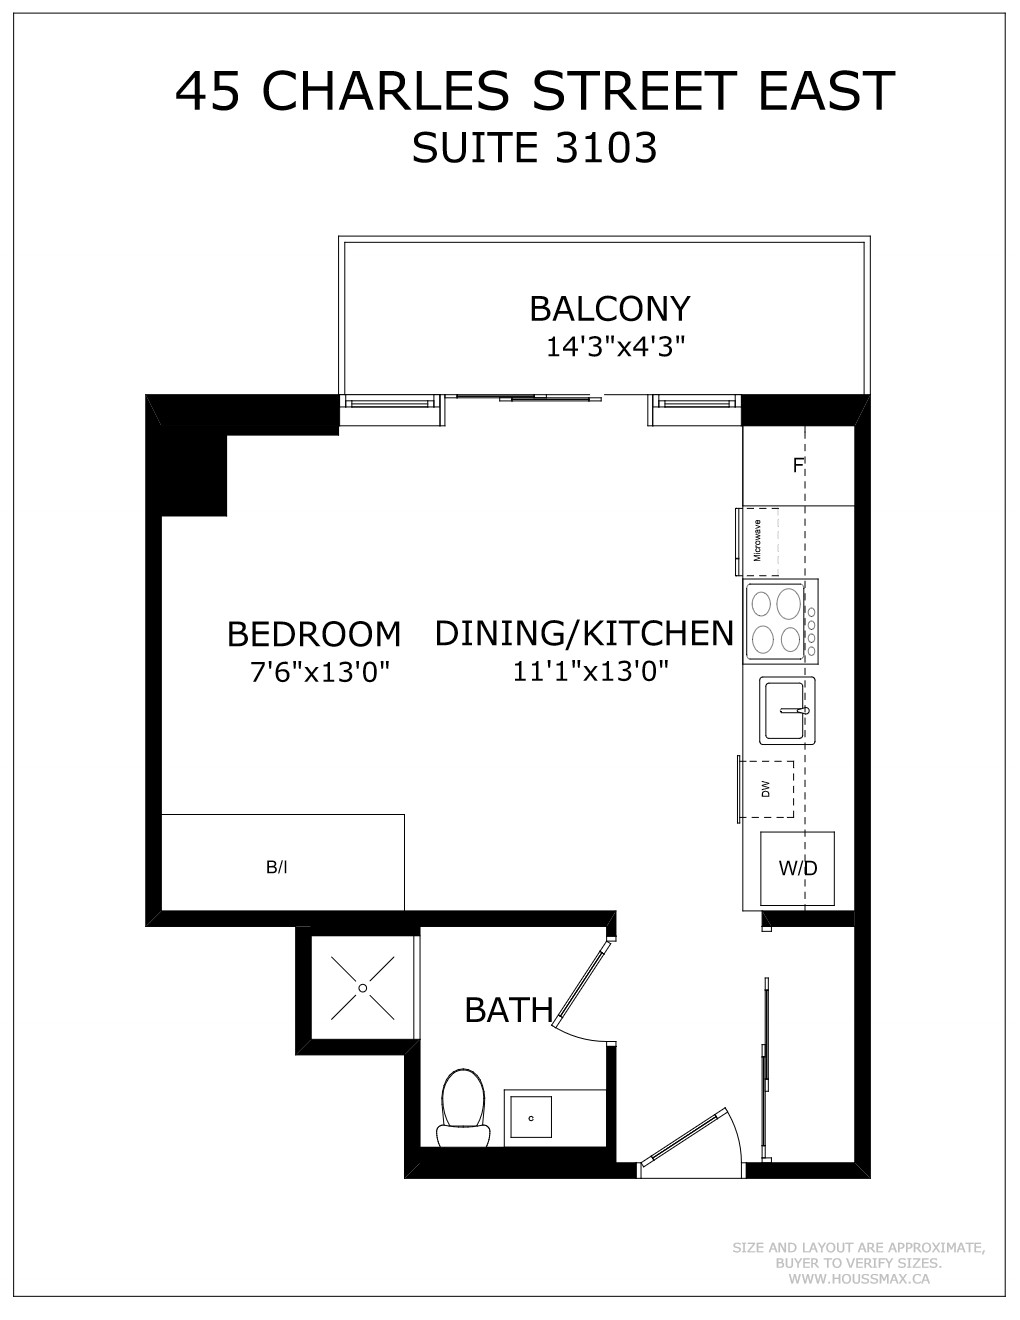 Floor plans for 45 Charles St E Unit 3103.